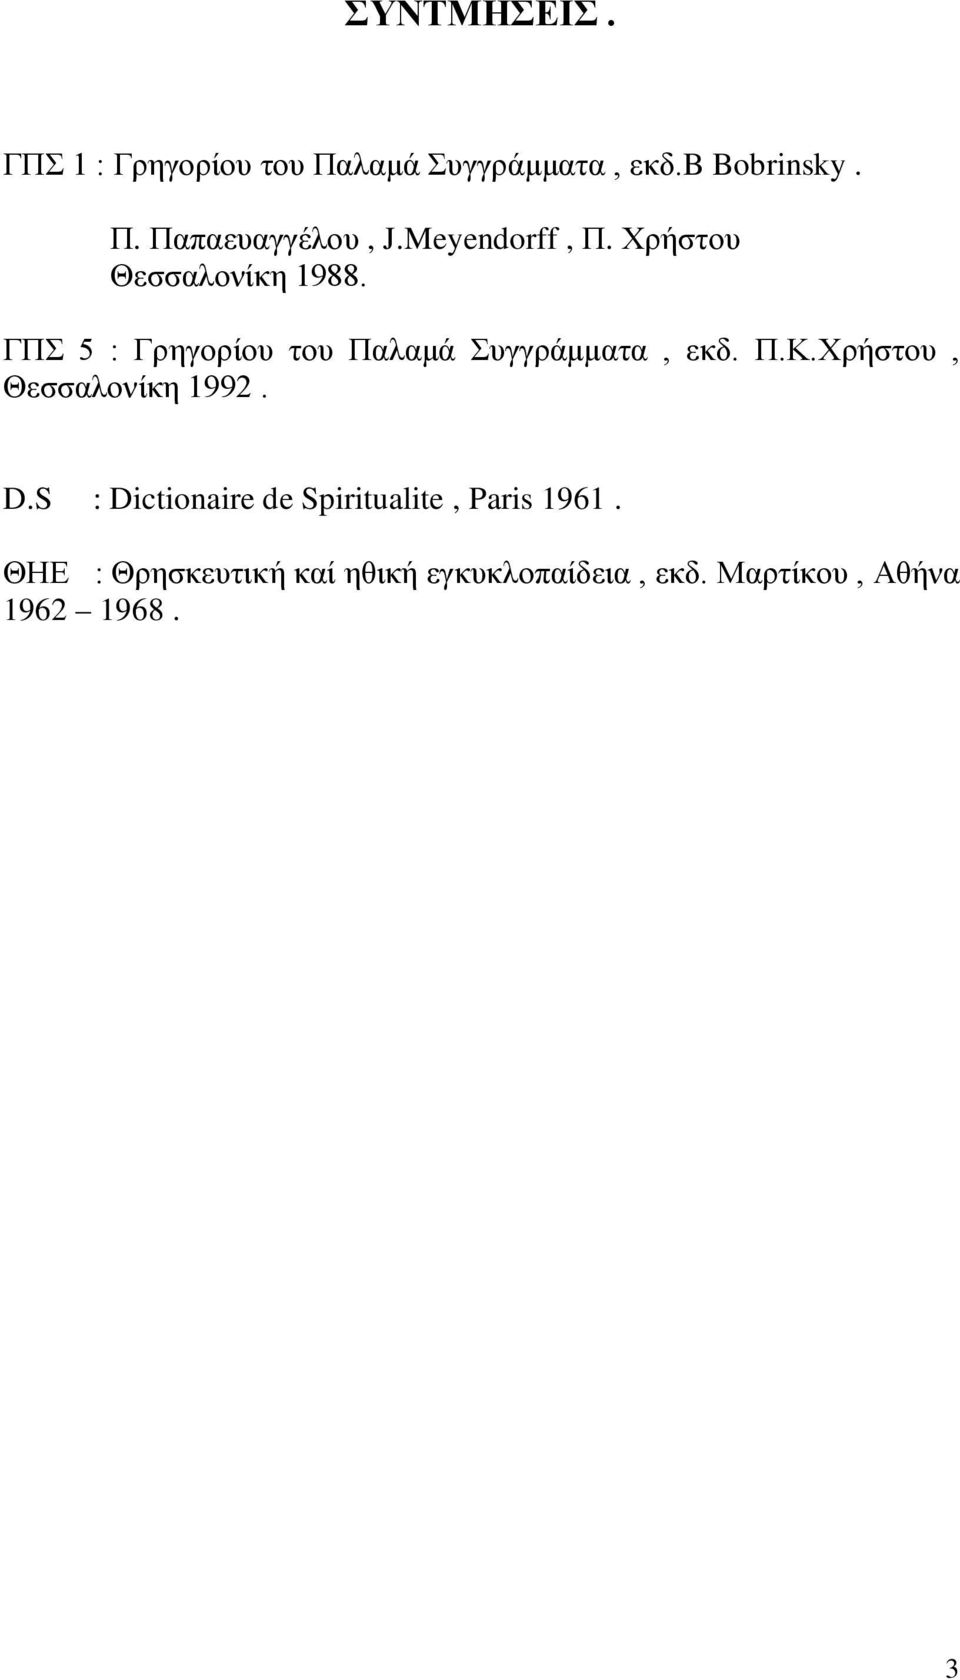 ΓΠΣ 5 : Γρηγορίου του Παλαμά Συγγράμματα, εκδ. Π.Κ.Χρήστου, Θεσσαλονίκη 1992. D.